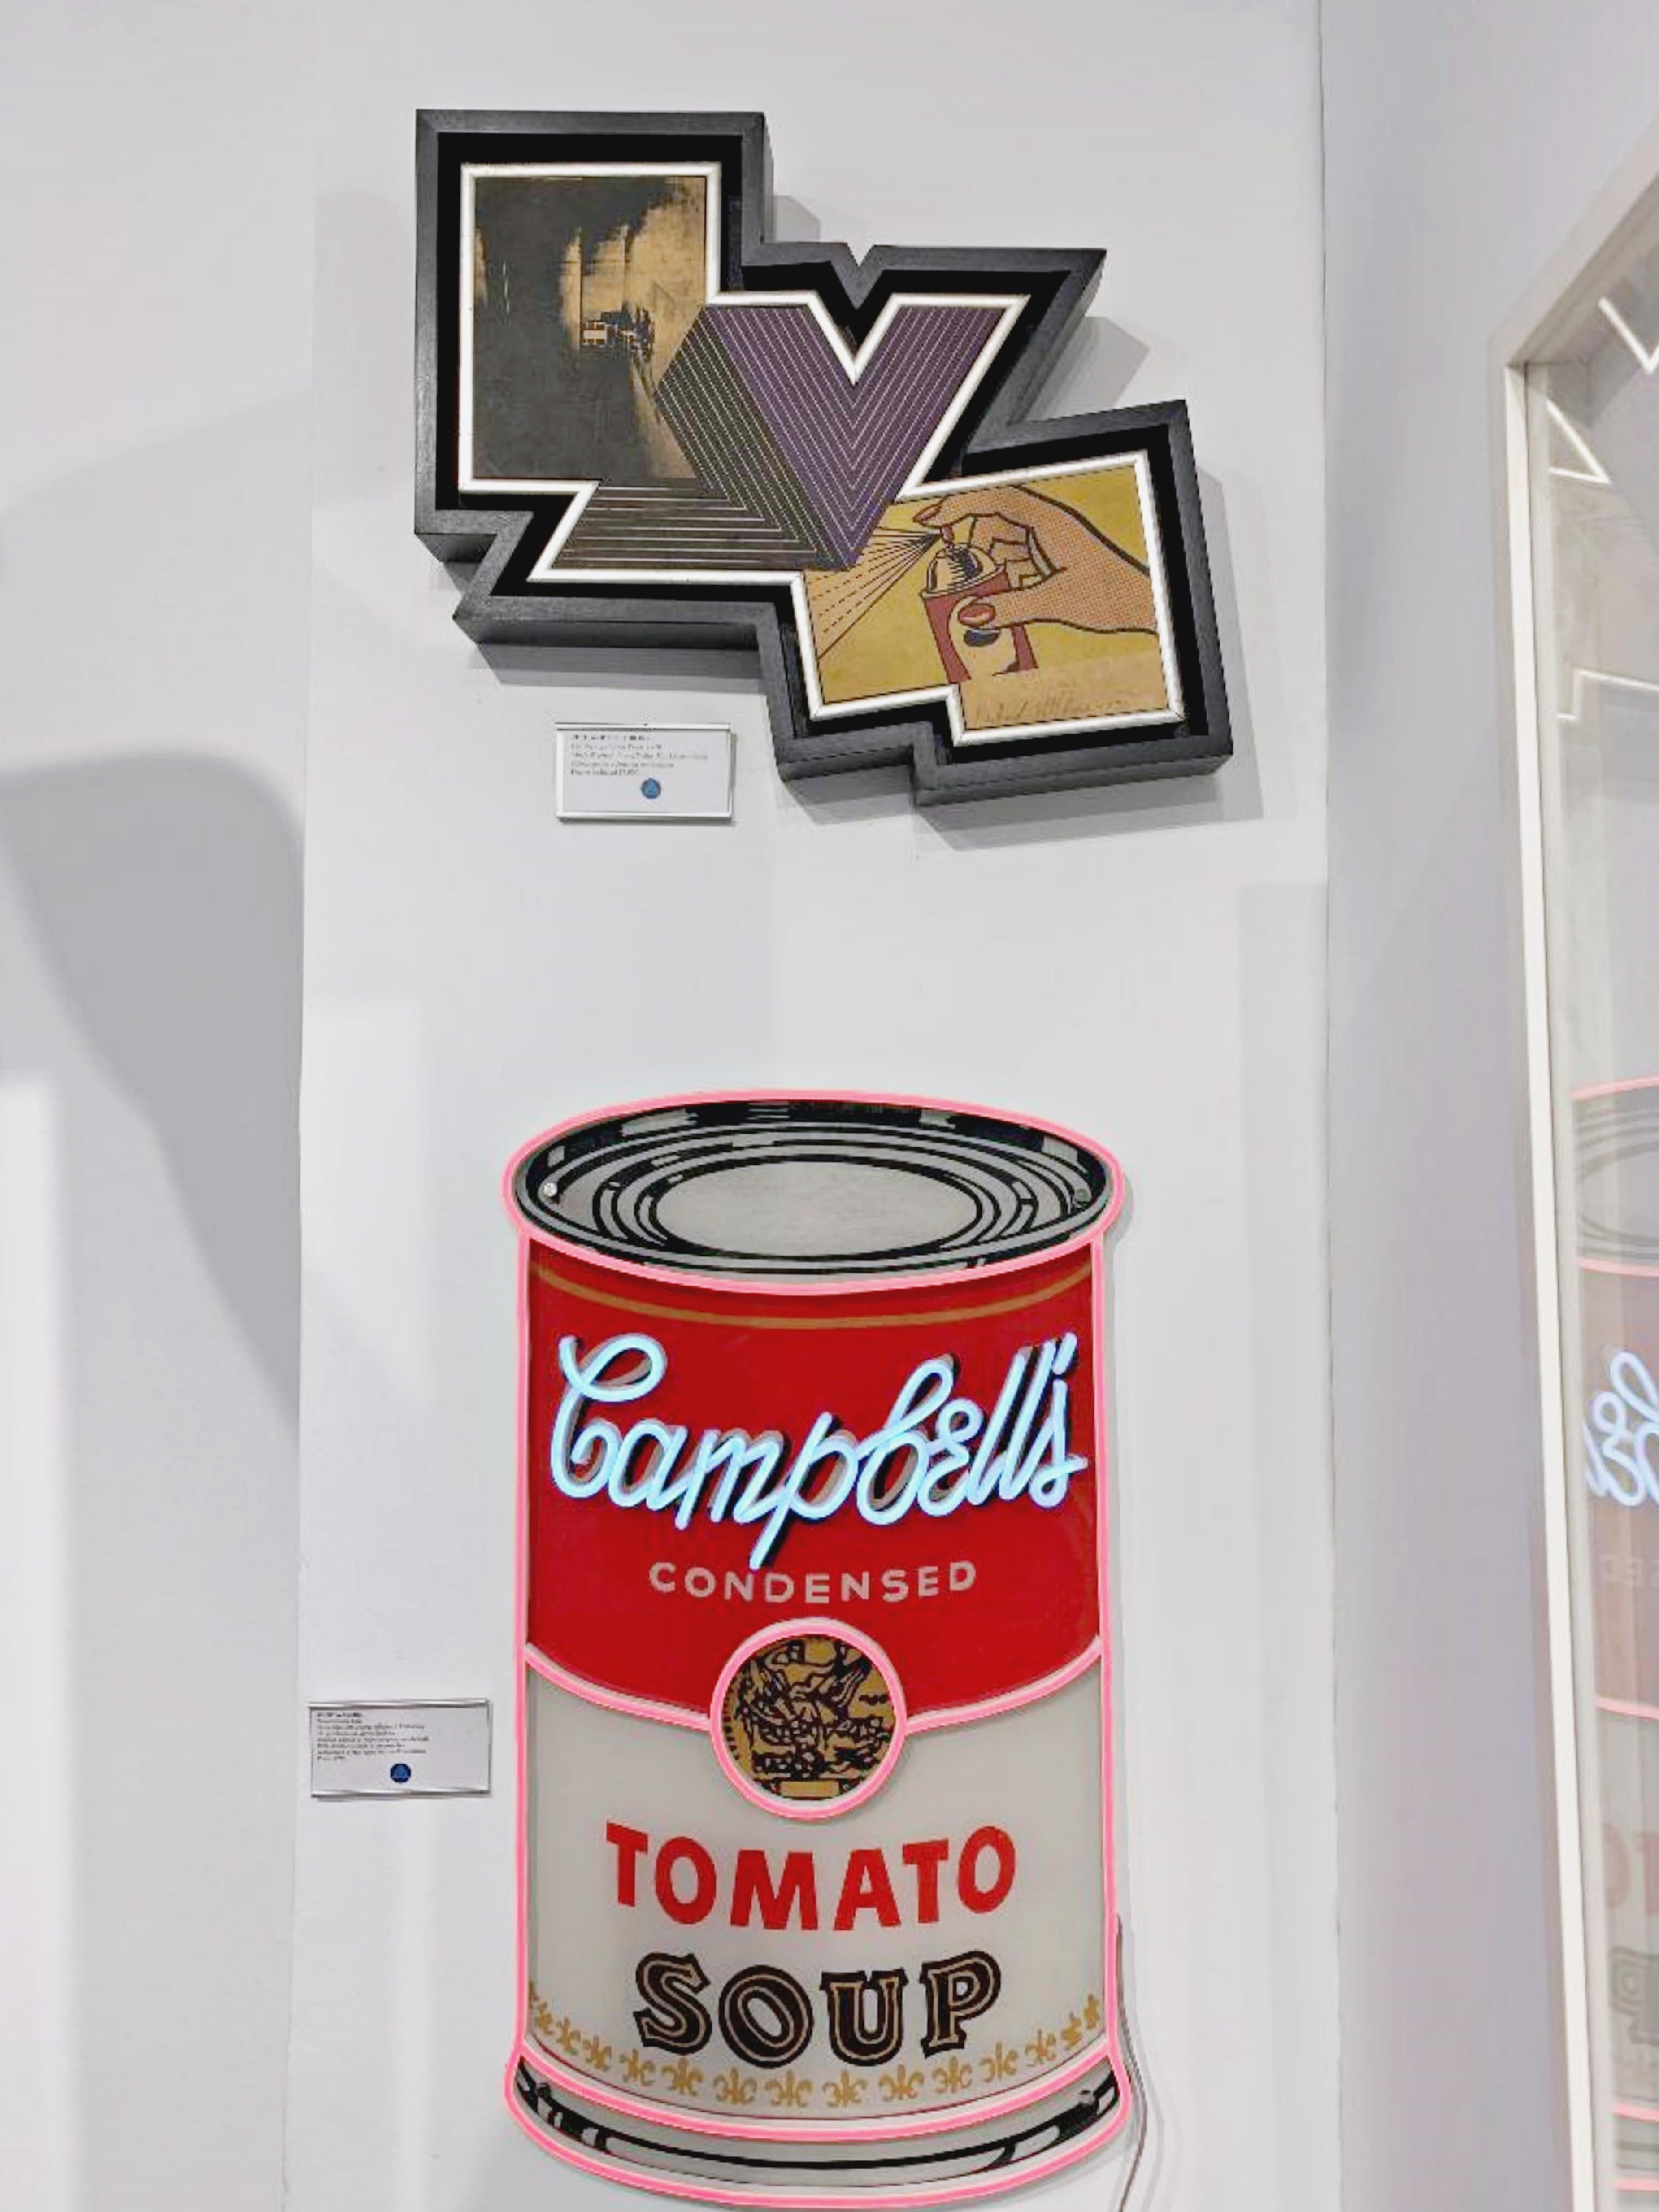 The Appropriation piece: Andy Warhol, Frank Stella, Roy Lichtenstein Unique var. For Sale 1